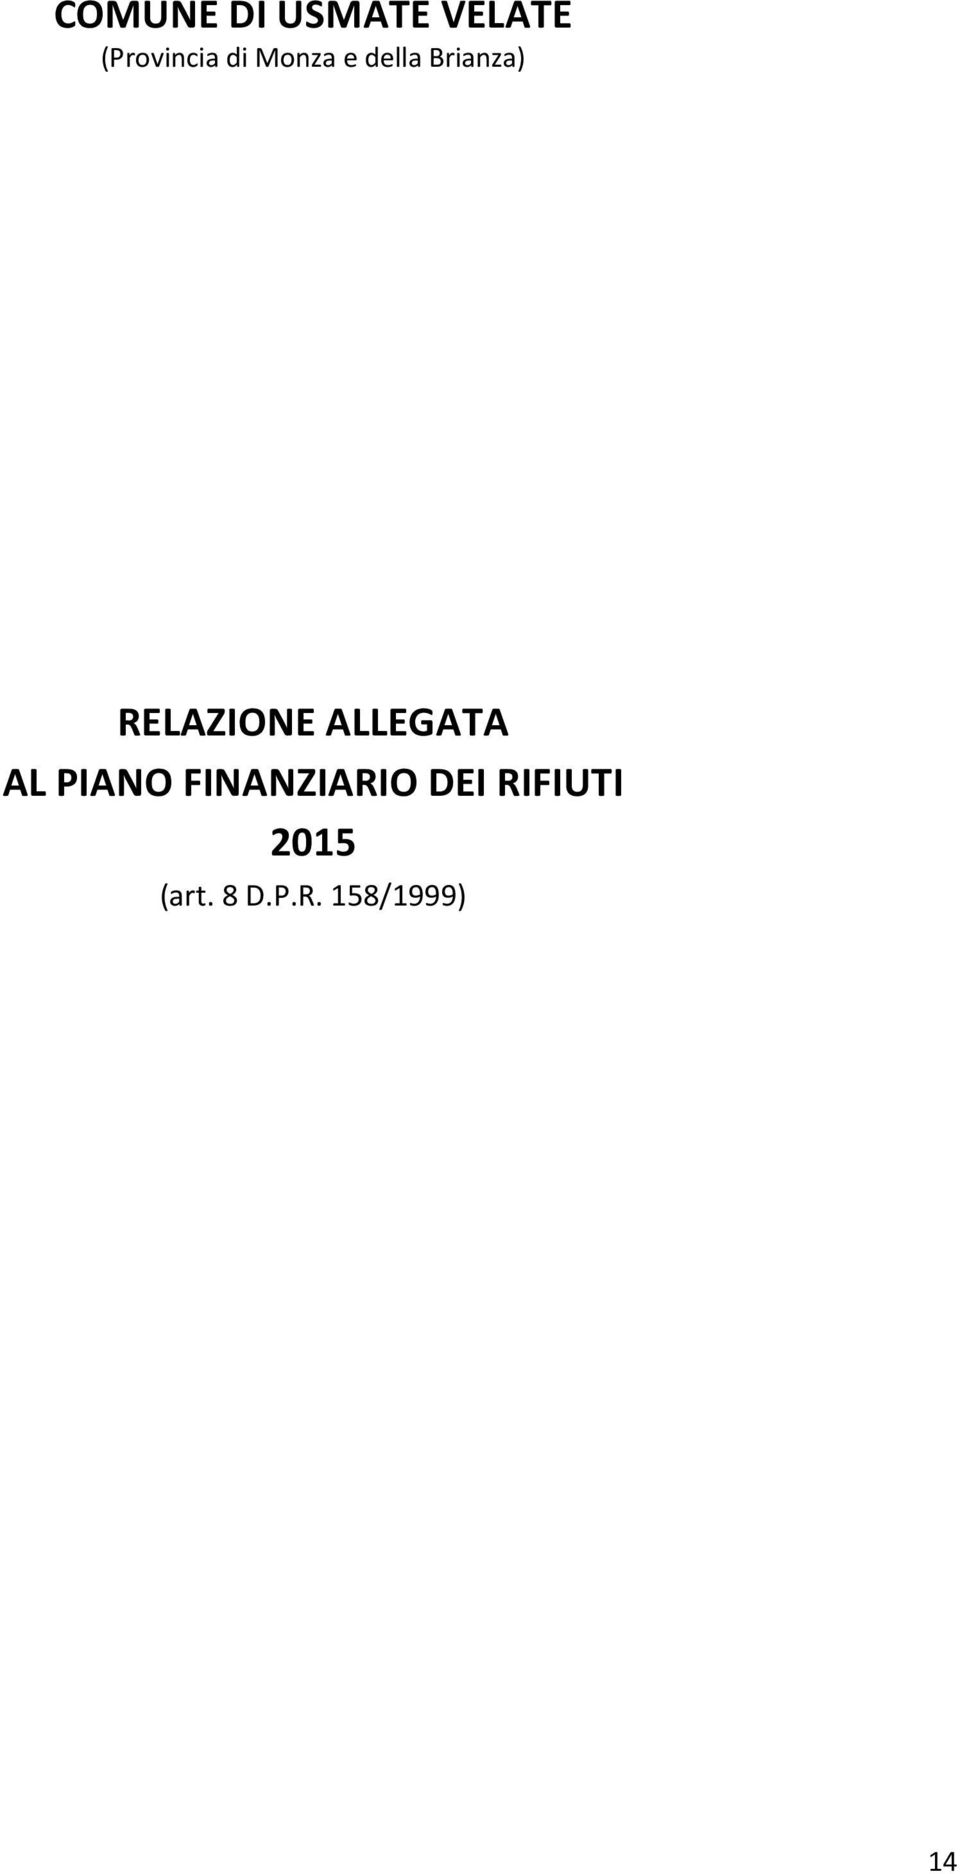 ALLEGATA AL PIANO FINANZIARIO DEI